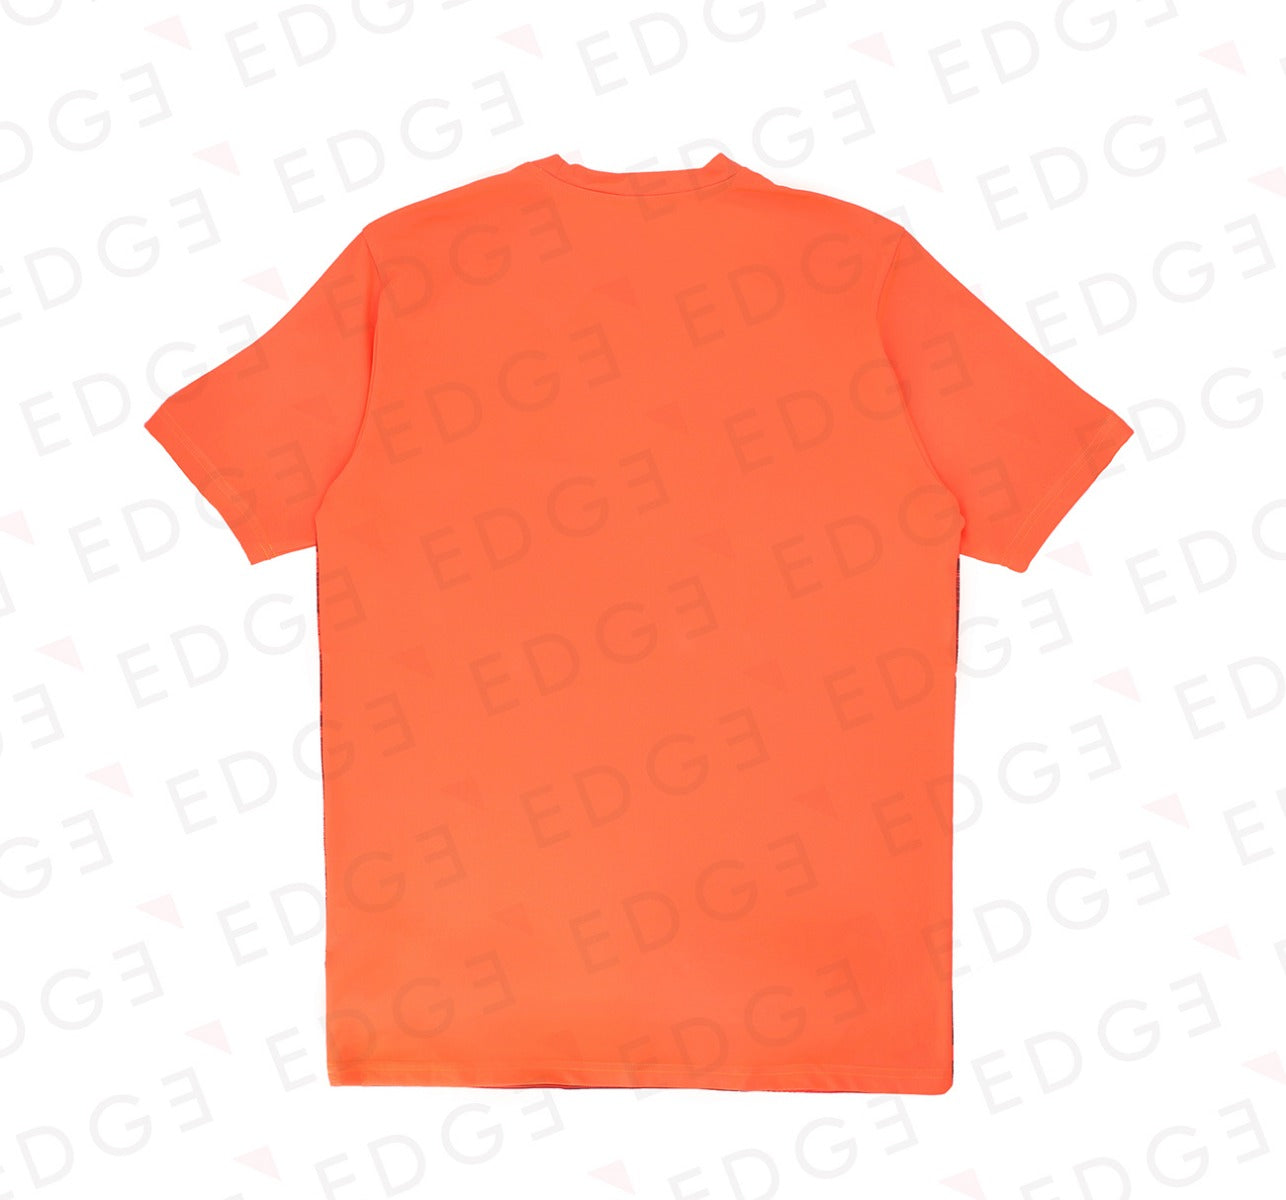 PUMA - ftbINXT Graphic Shirt Core - nrgy red-puma black - SKU-656428-03 - Men